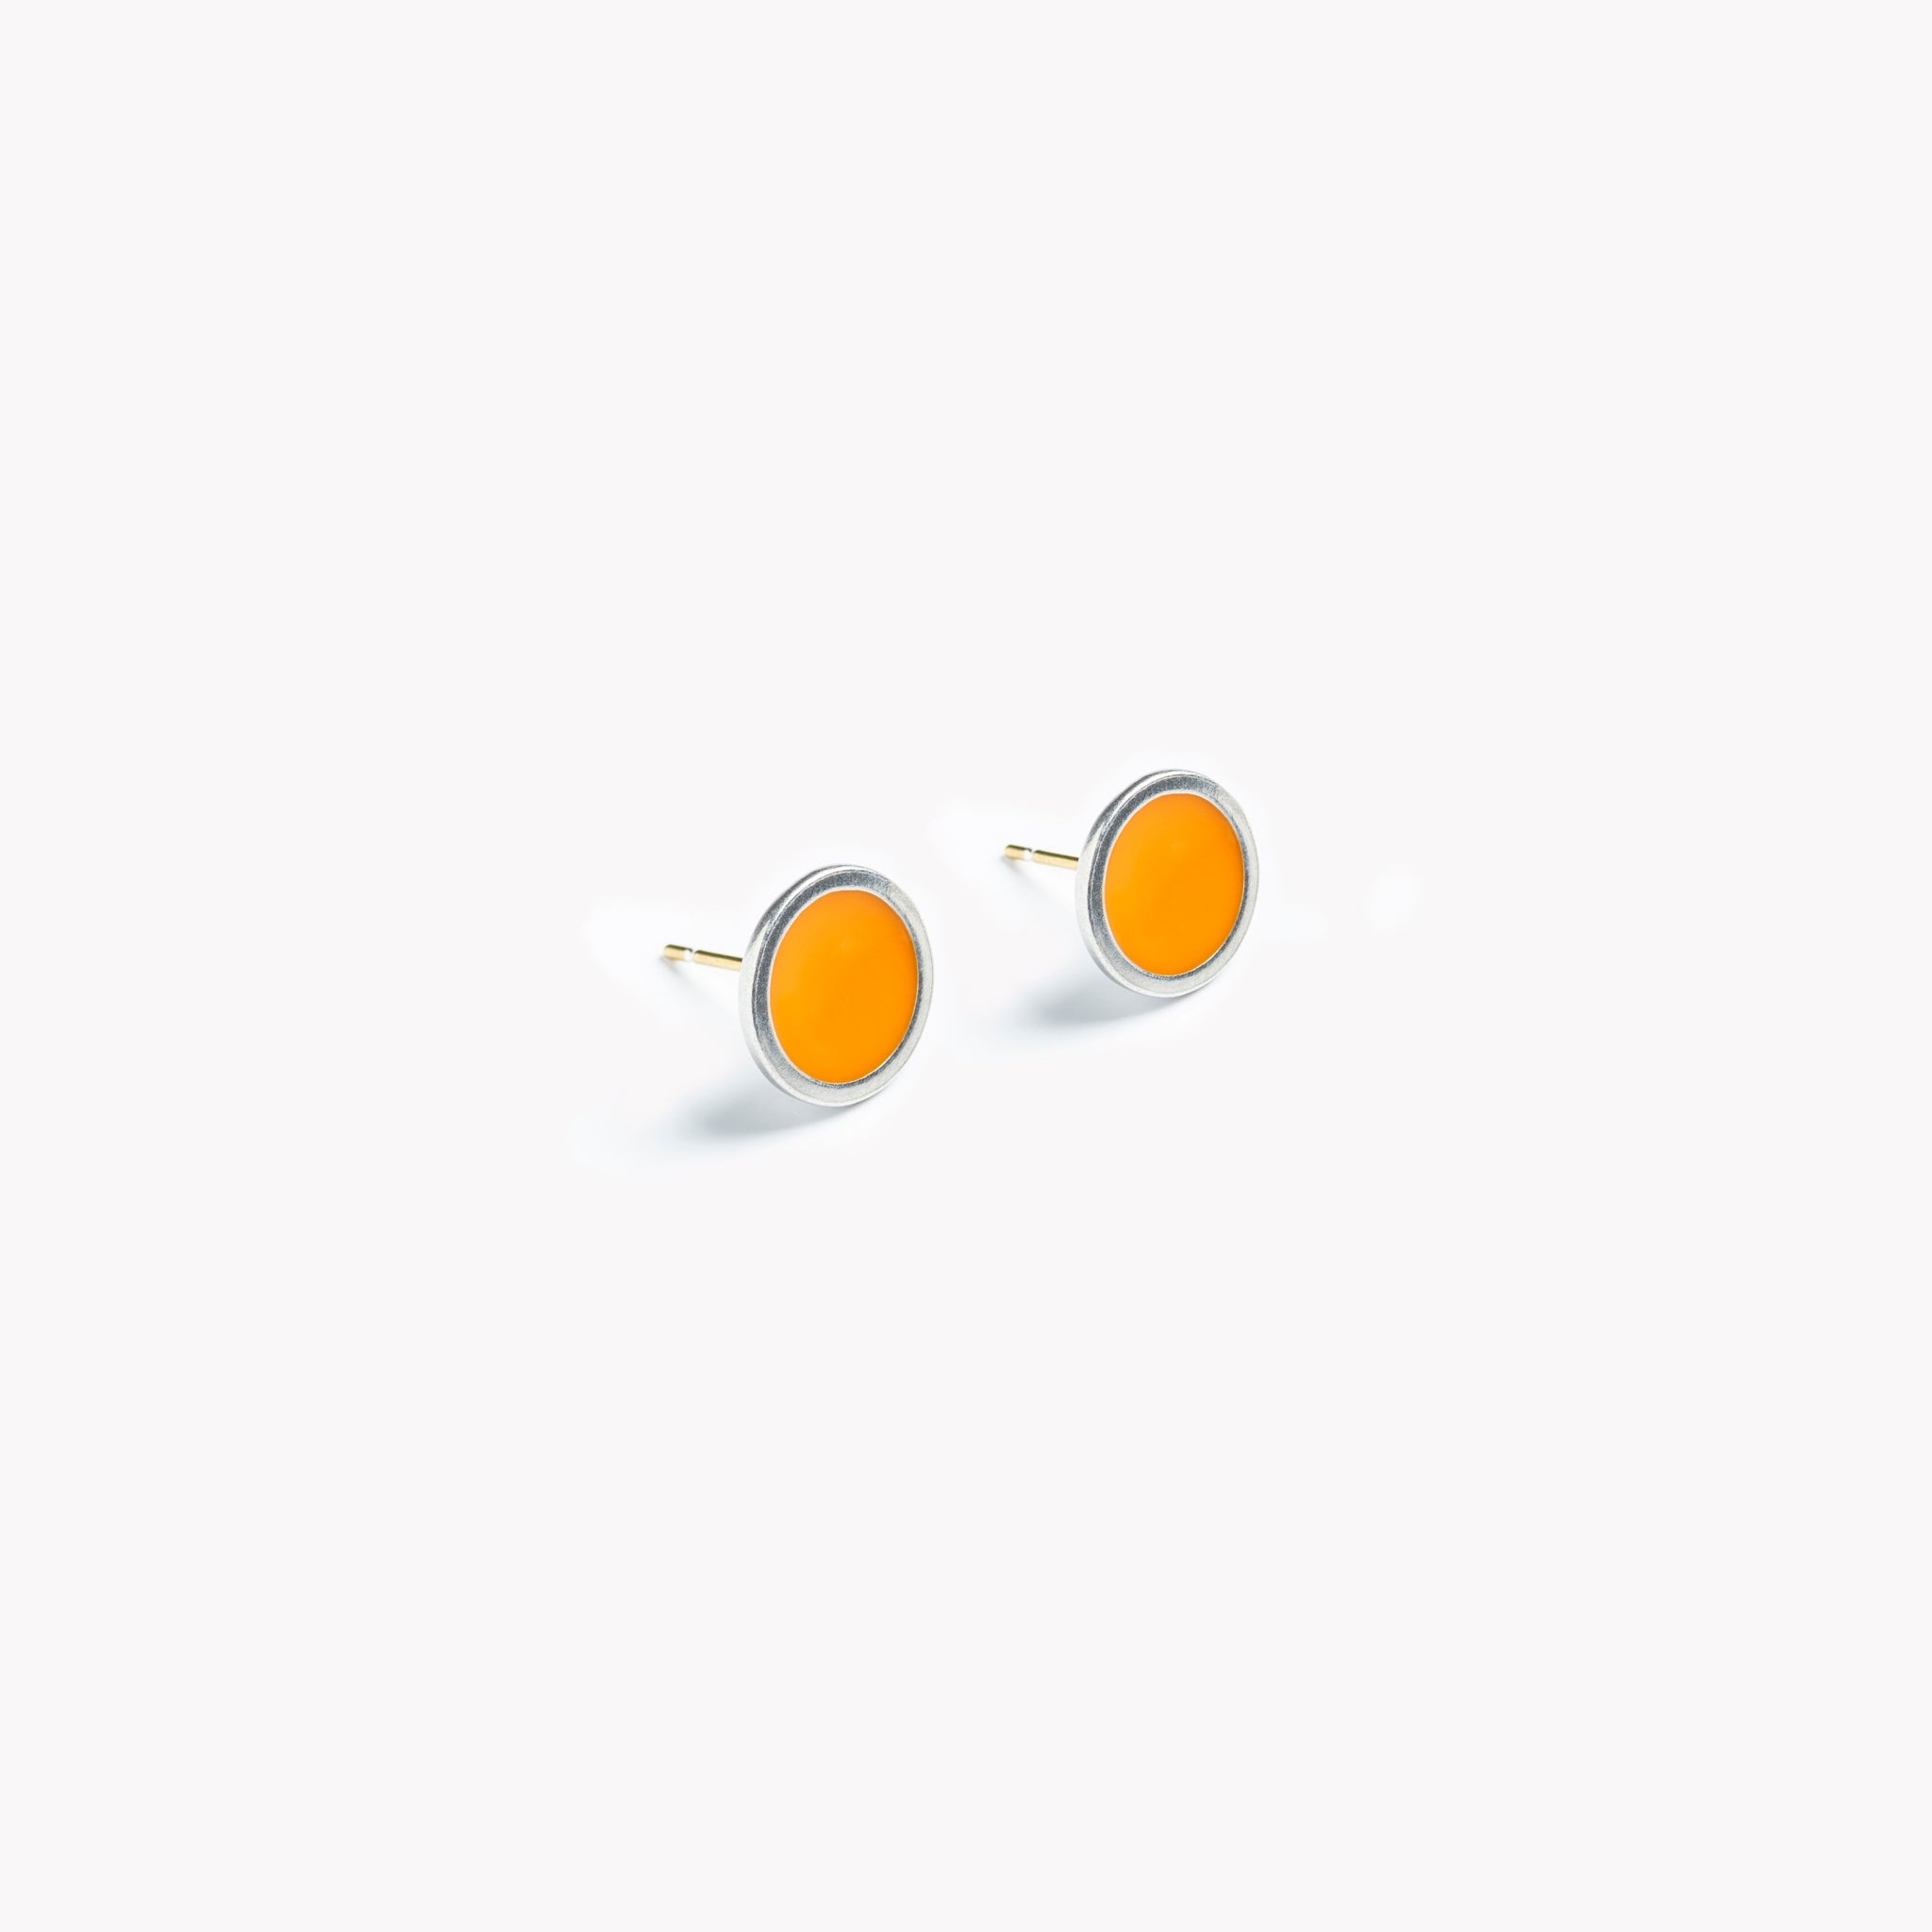 A simple pair of bright orange circular stud earrings.